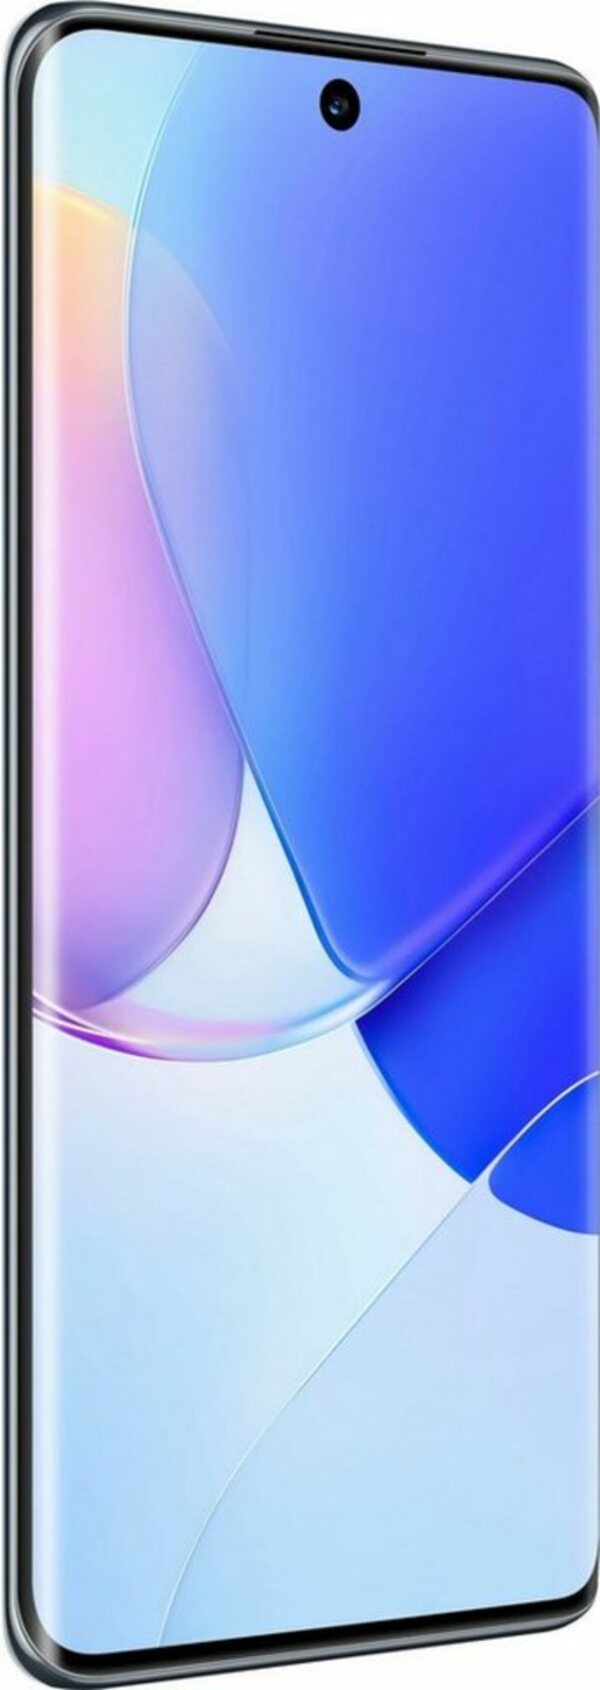 Bild 1 von Huawei nova 9 Smartphone (16,69 cm/6,5 Zoll, 128 GB Speicherplatz, 50 MP Kamera)